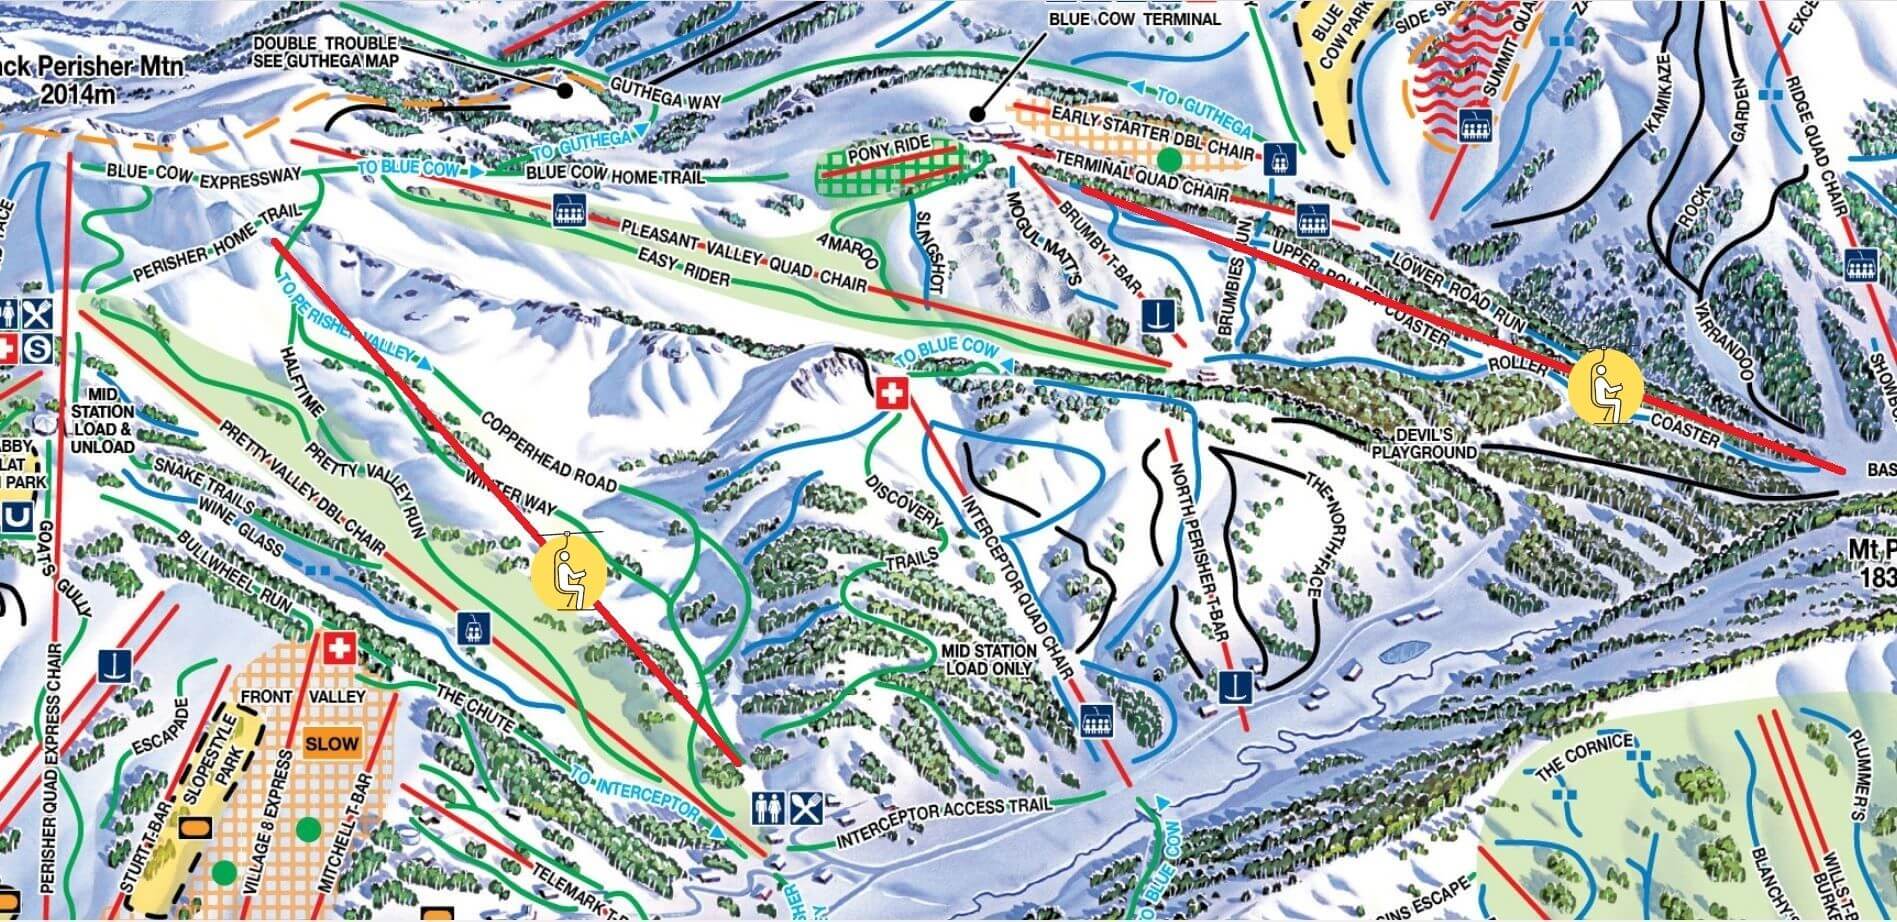 perisher ski resort